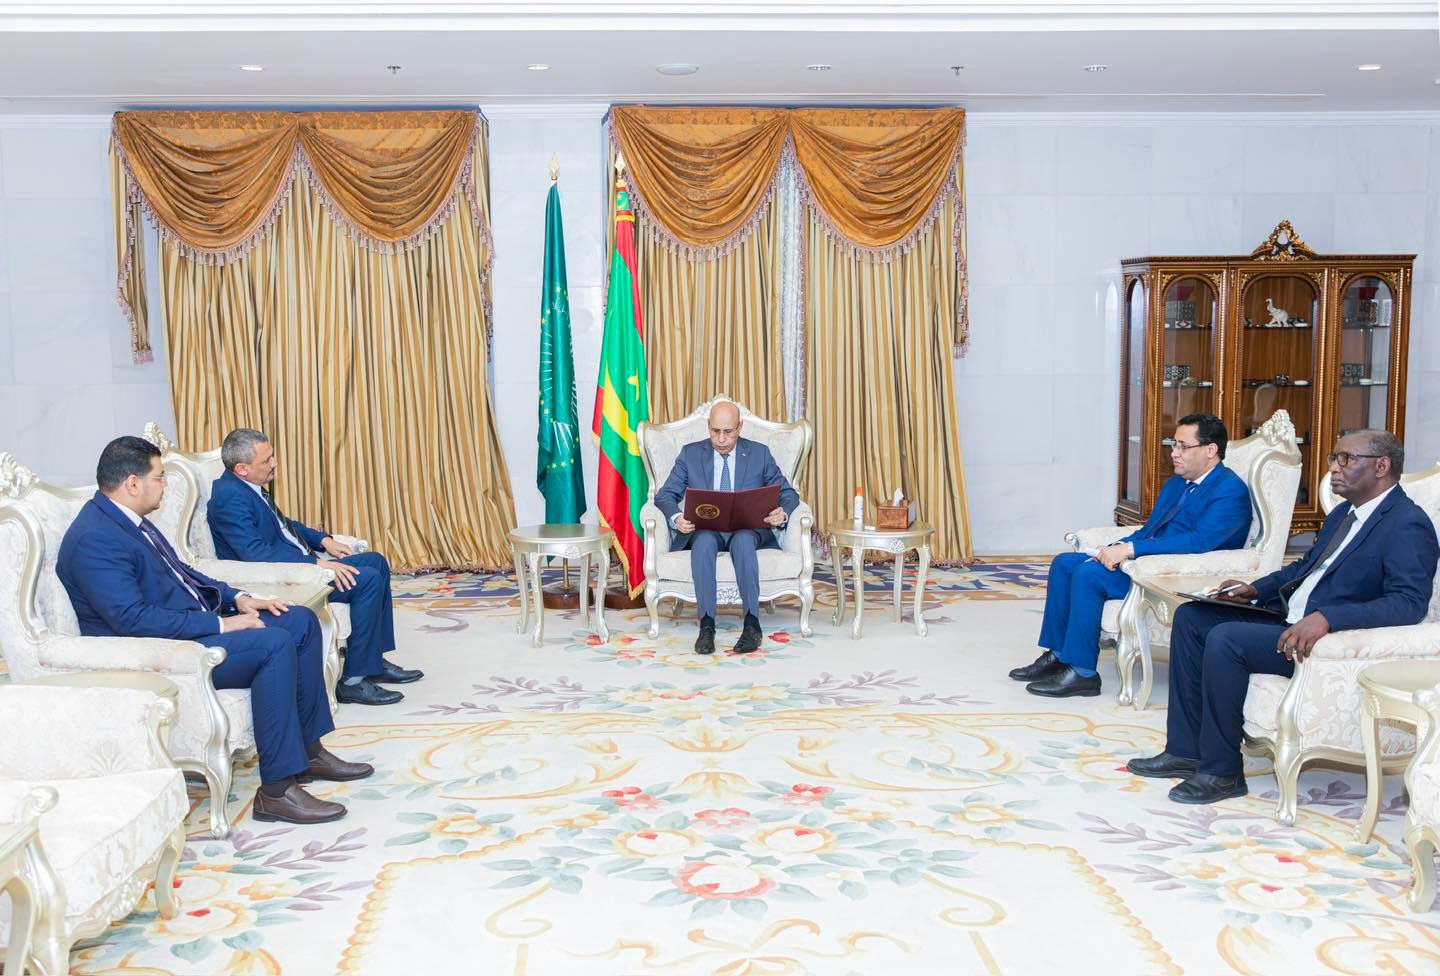  ( الفلاح ) يسلم الرئيس الموريتاني رسالة من " المنفي "  لتأكيد عمق العلاقات التاريخية بين البلدين الشقيقين  وتفعيل دور اتحاد المغرب العربي . 